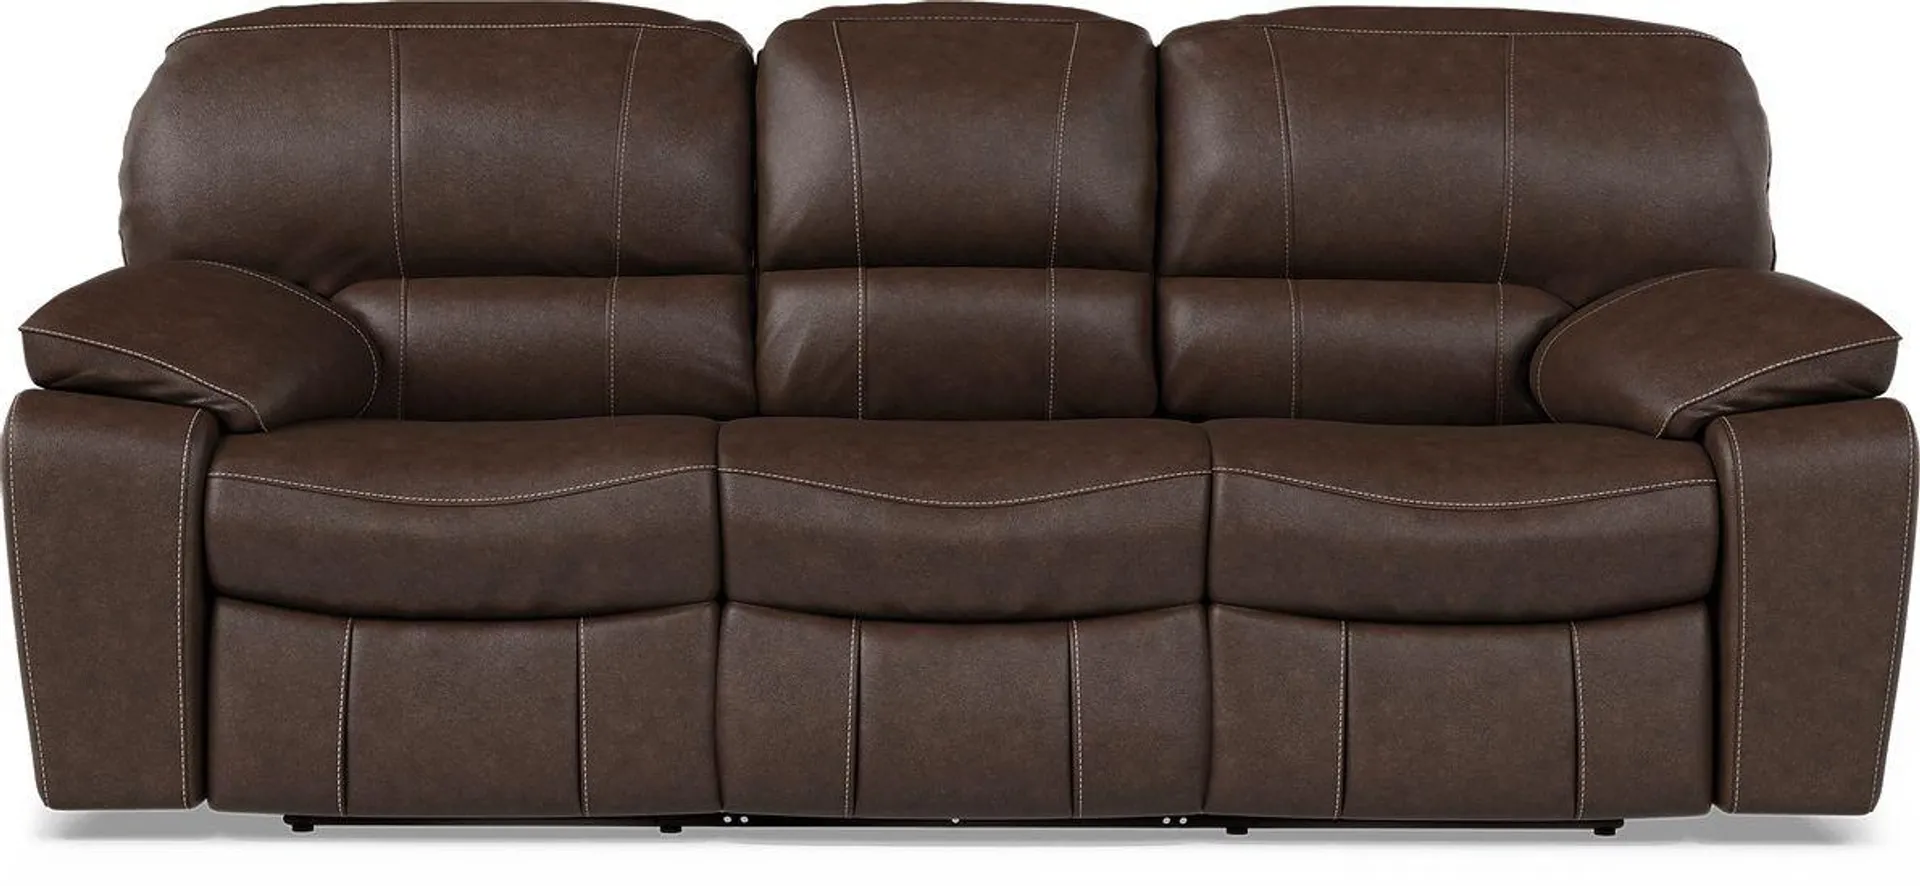 San Gabriel Leather Power Reclining Sofa